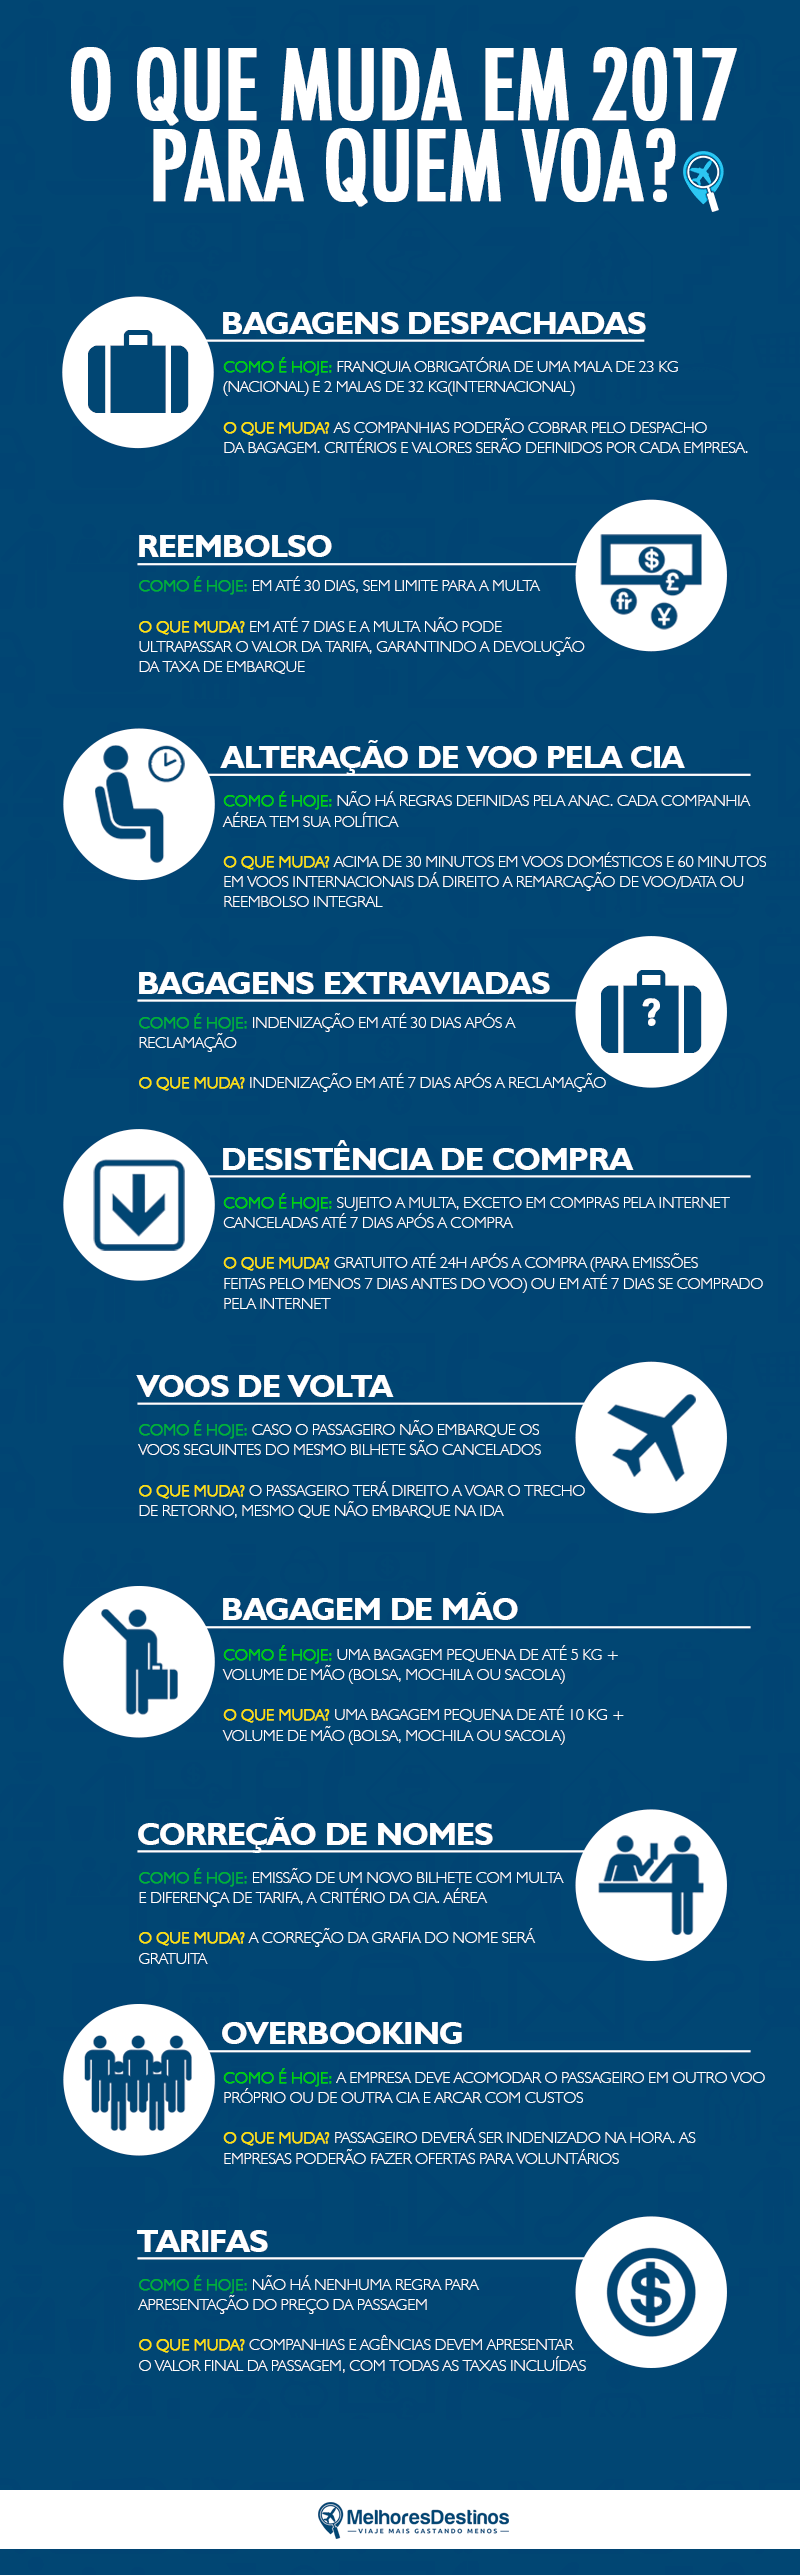 regras-aviacao-anac-bagagens-reembolsos-2017